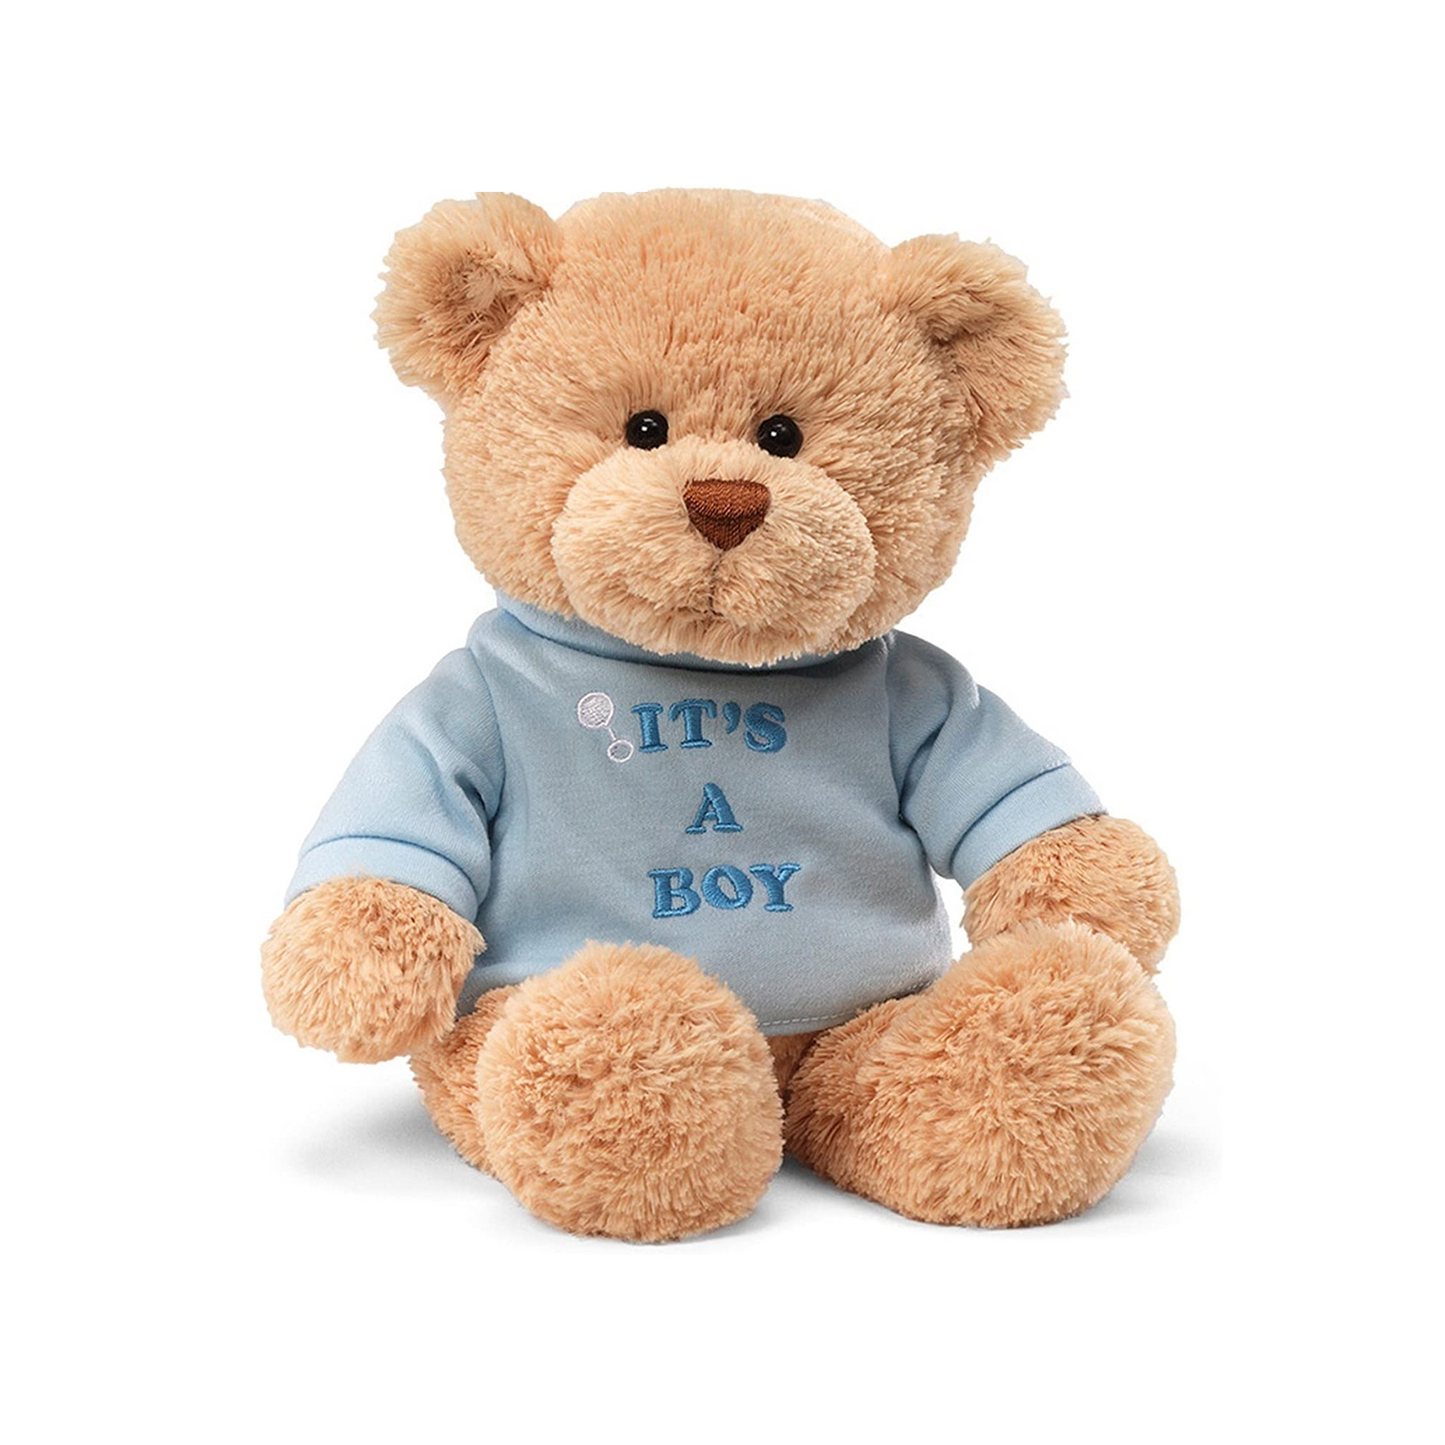 It's a Boy Teddy